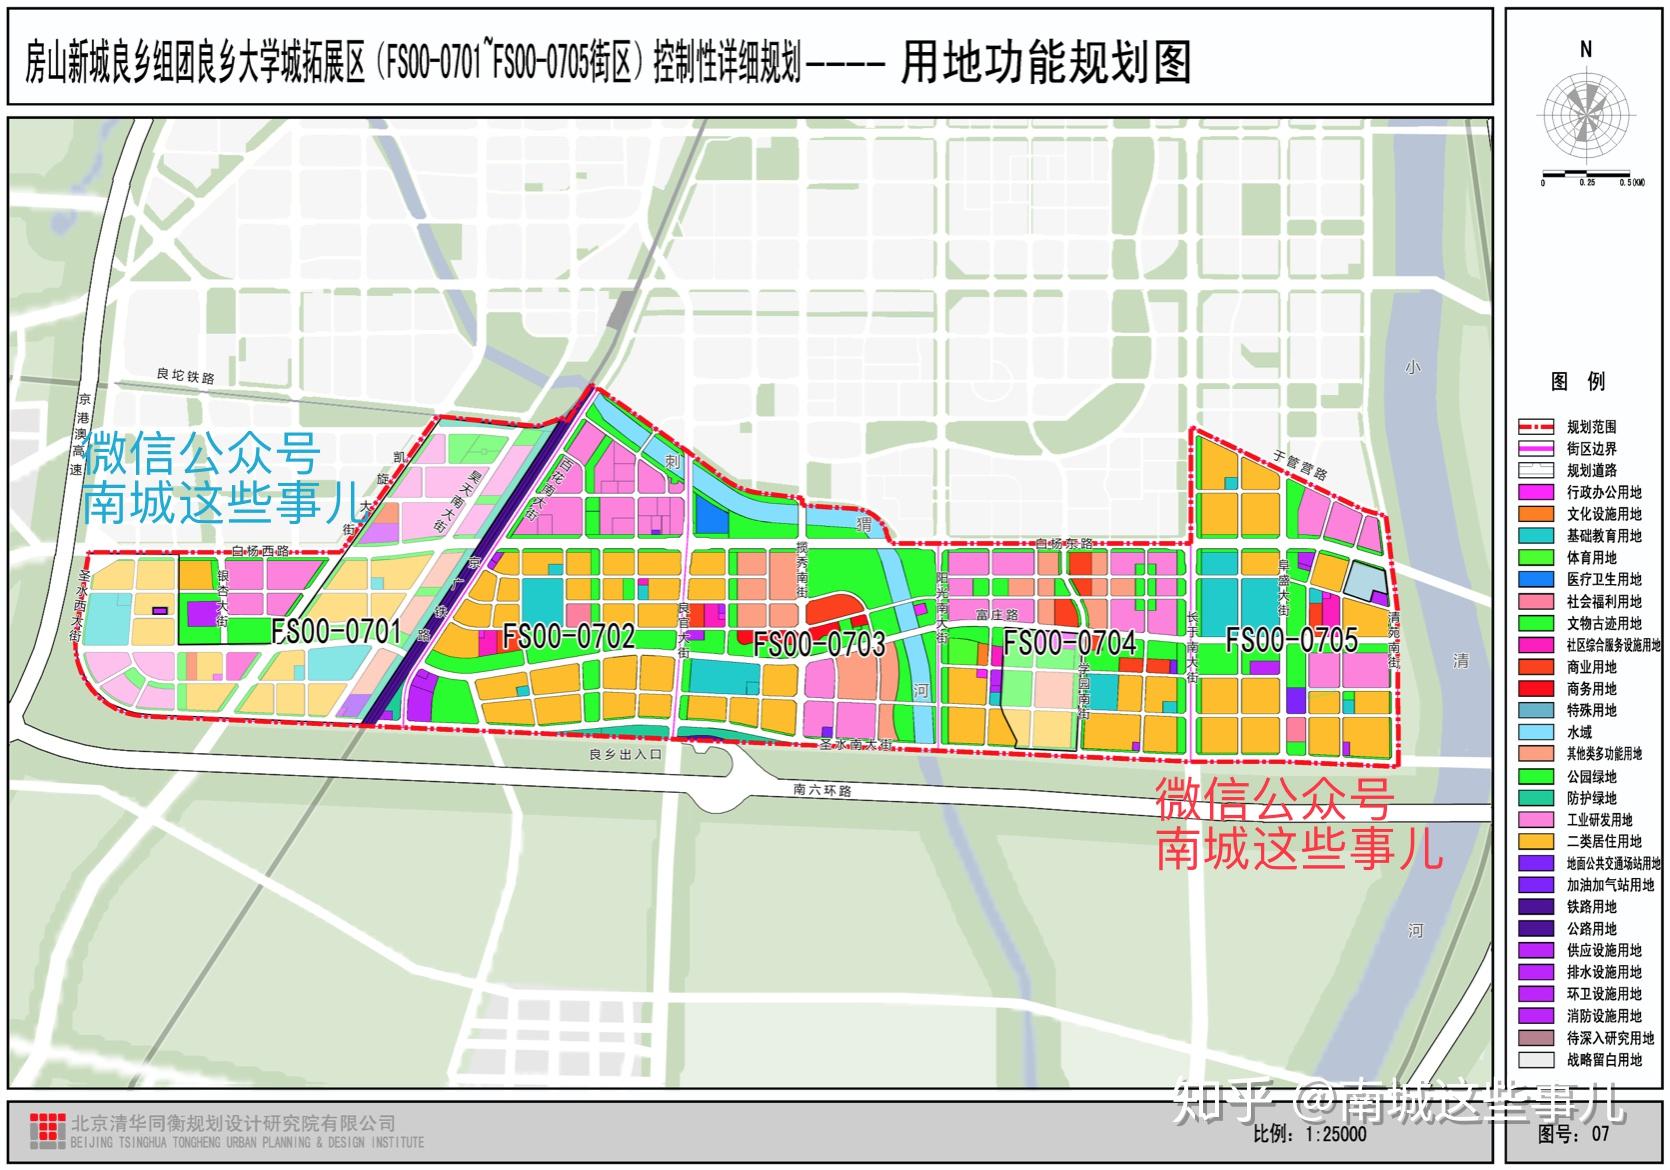 北京南城良乡大学城扩区规划出炉房山崛起了